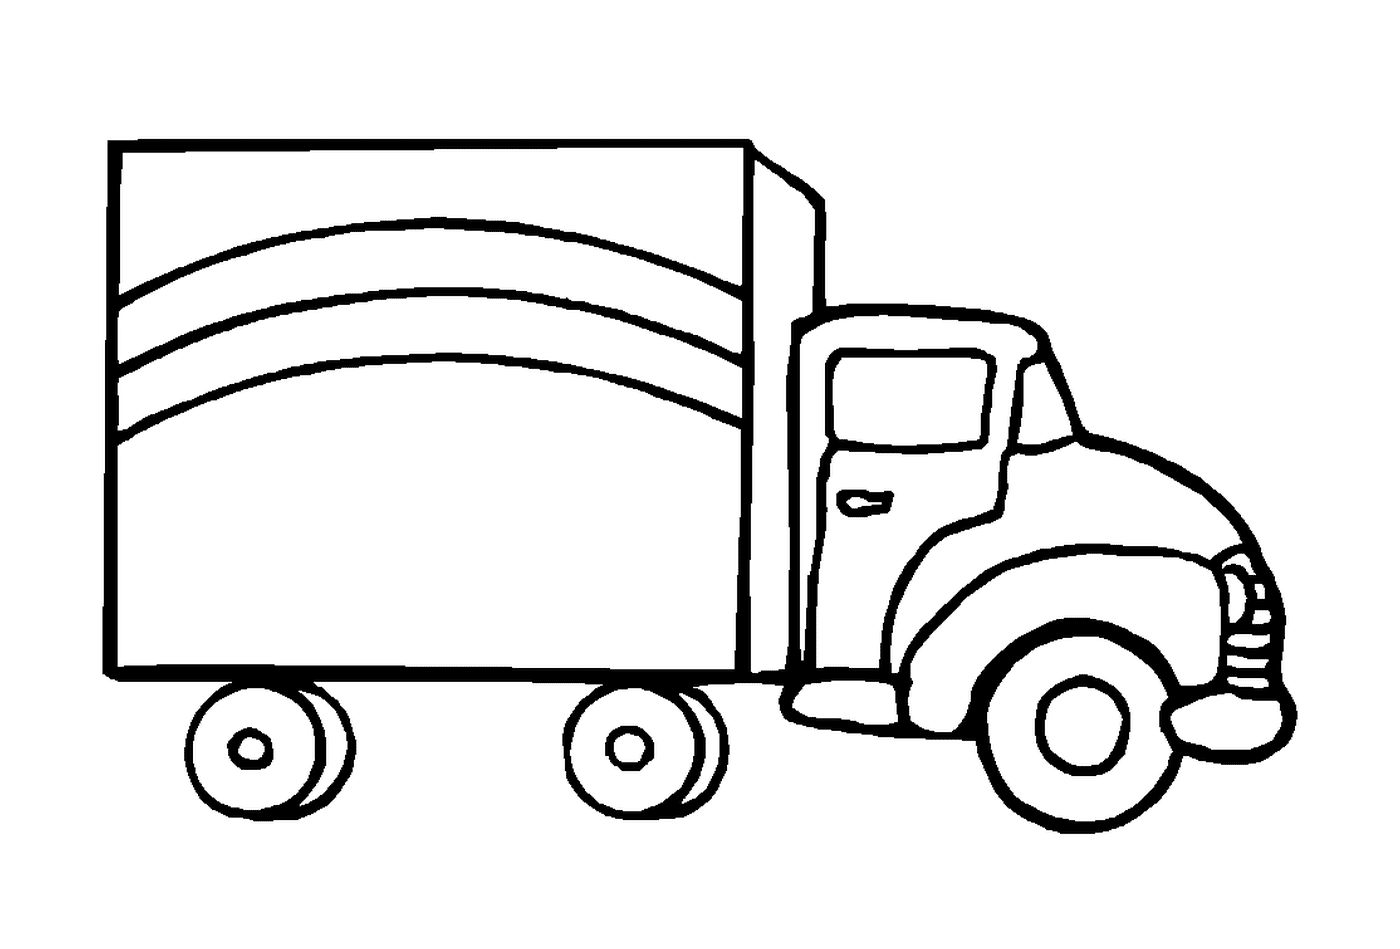  Un camión tirado 